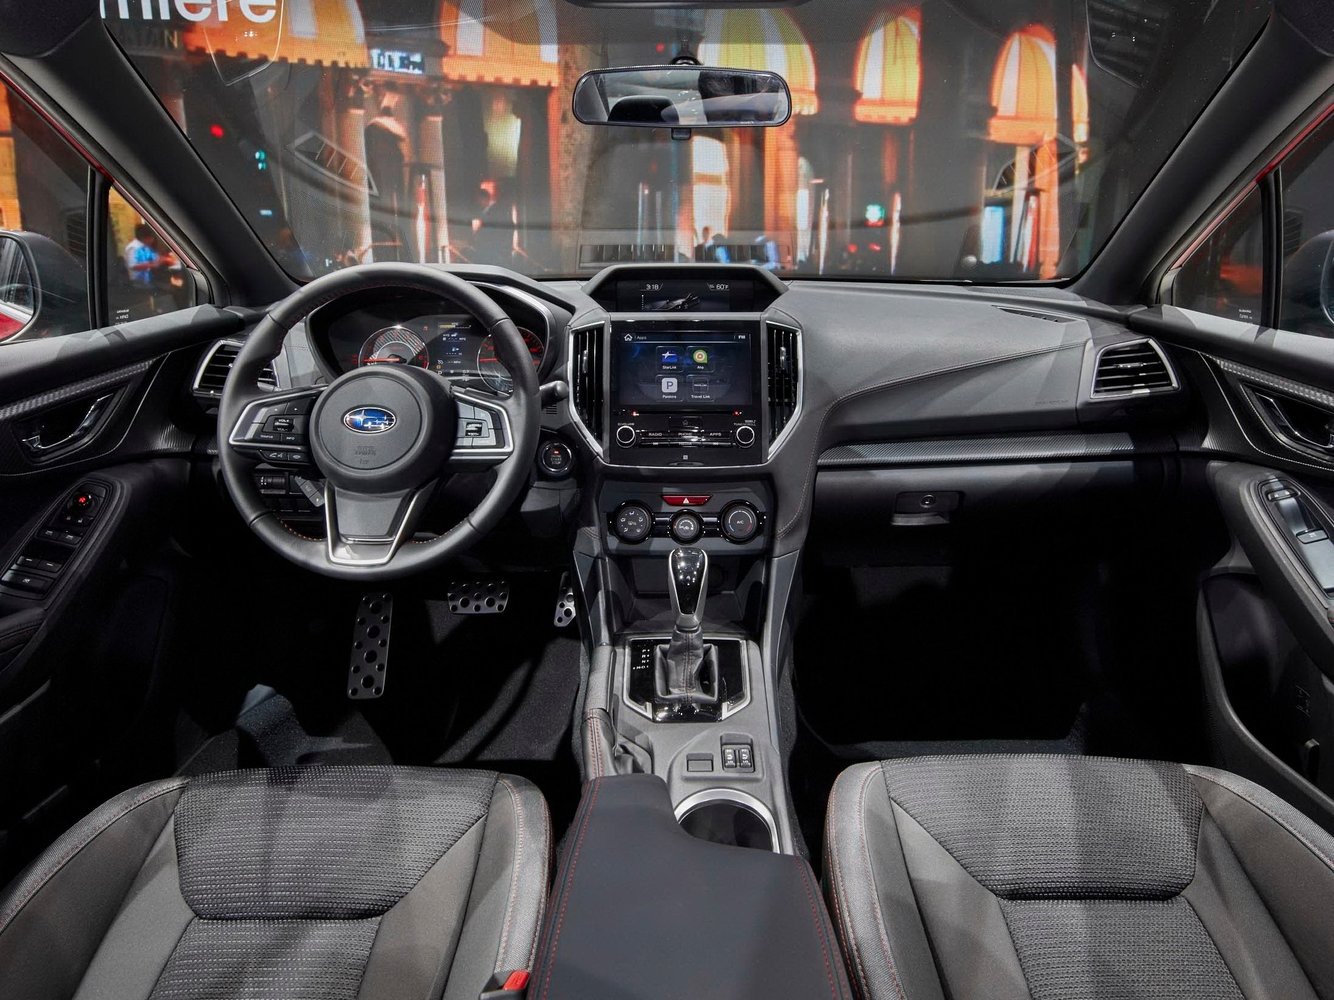 седан Subaru Impreza 2016г выпуска модификация 2.0 CVT (152 л.с.) 4×4